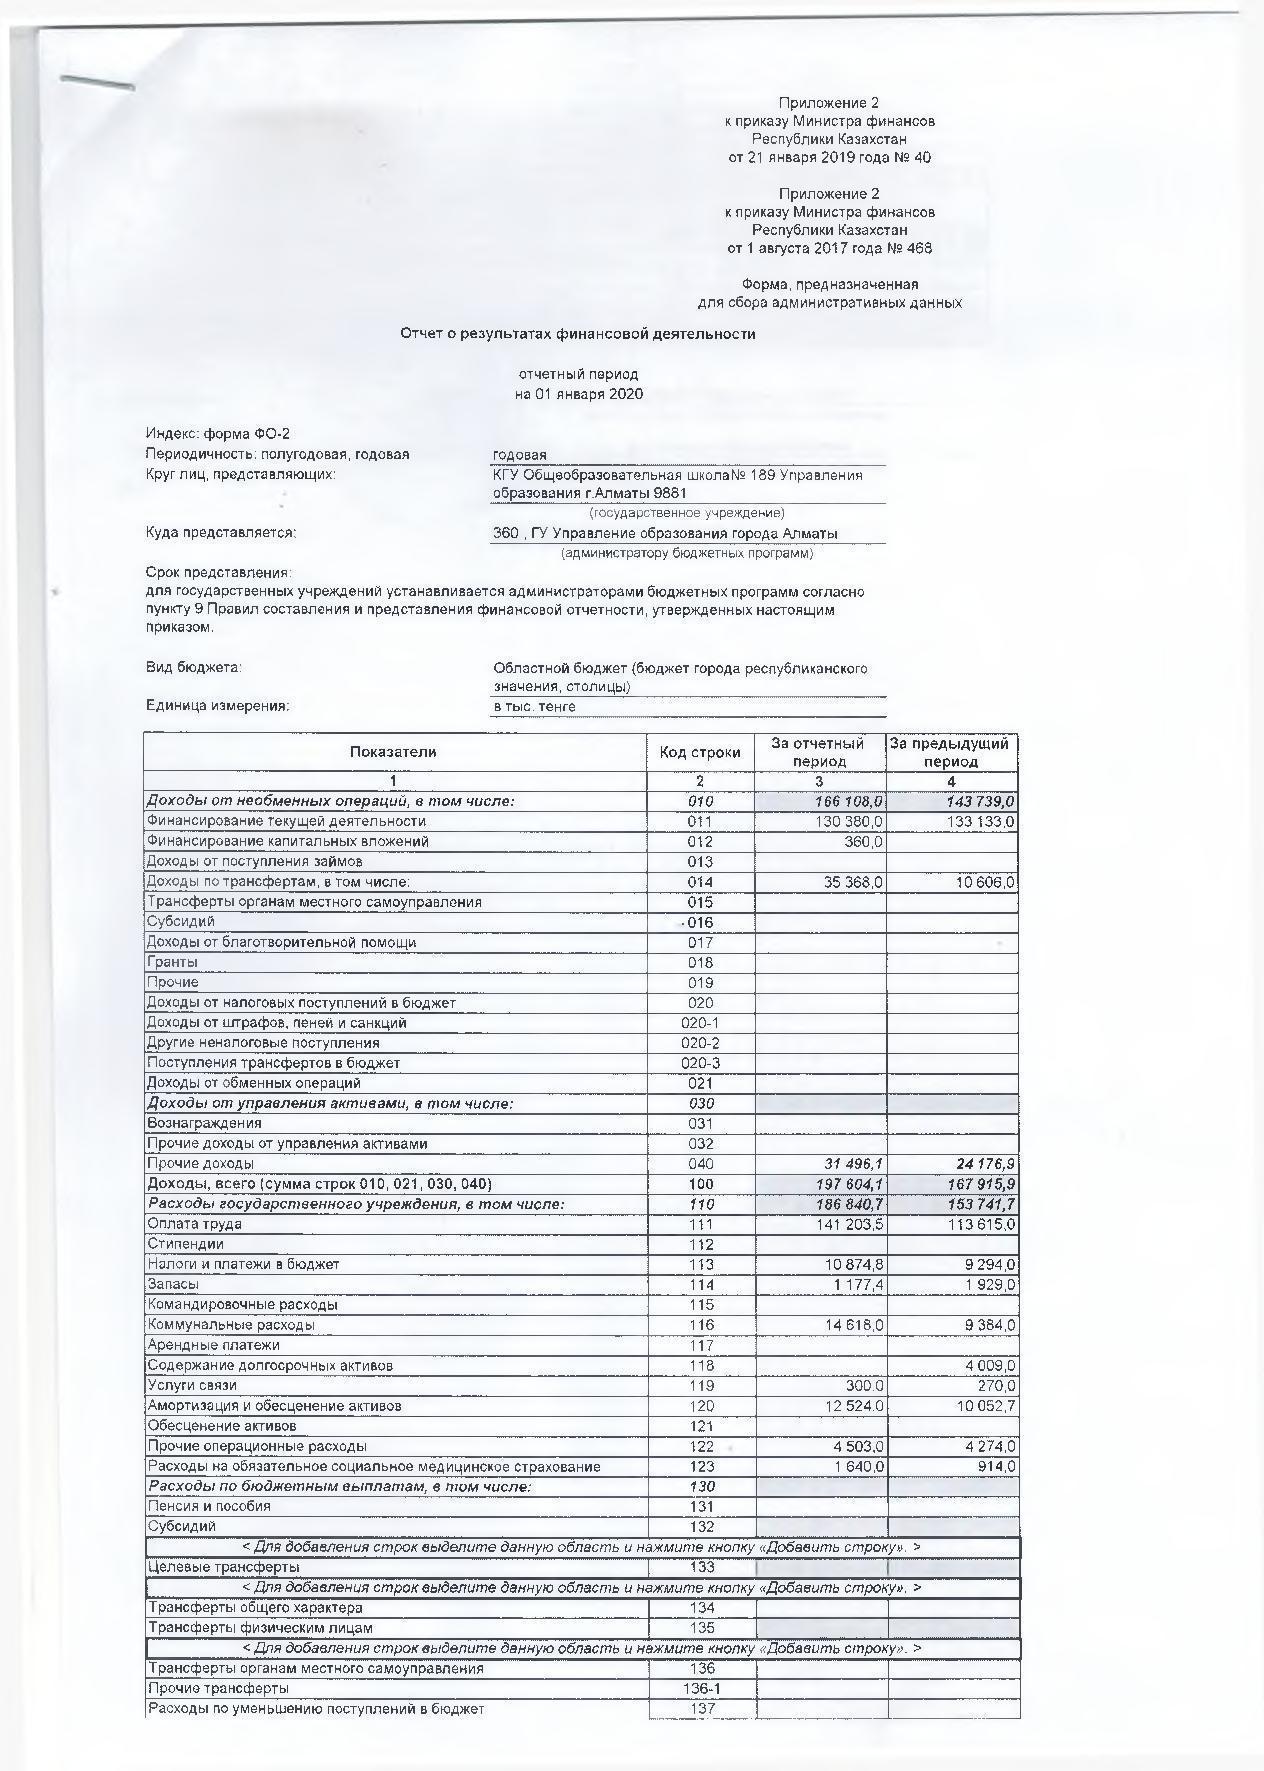 Отчет о резултатах финансовой деятельности на 01.01.2020